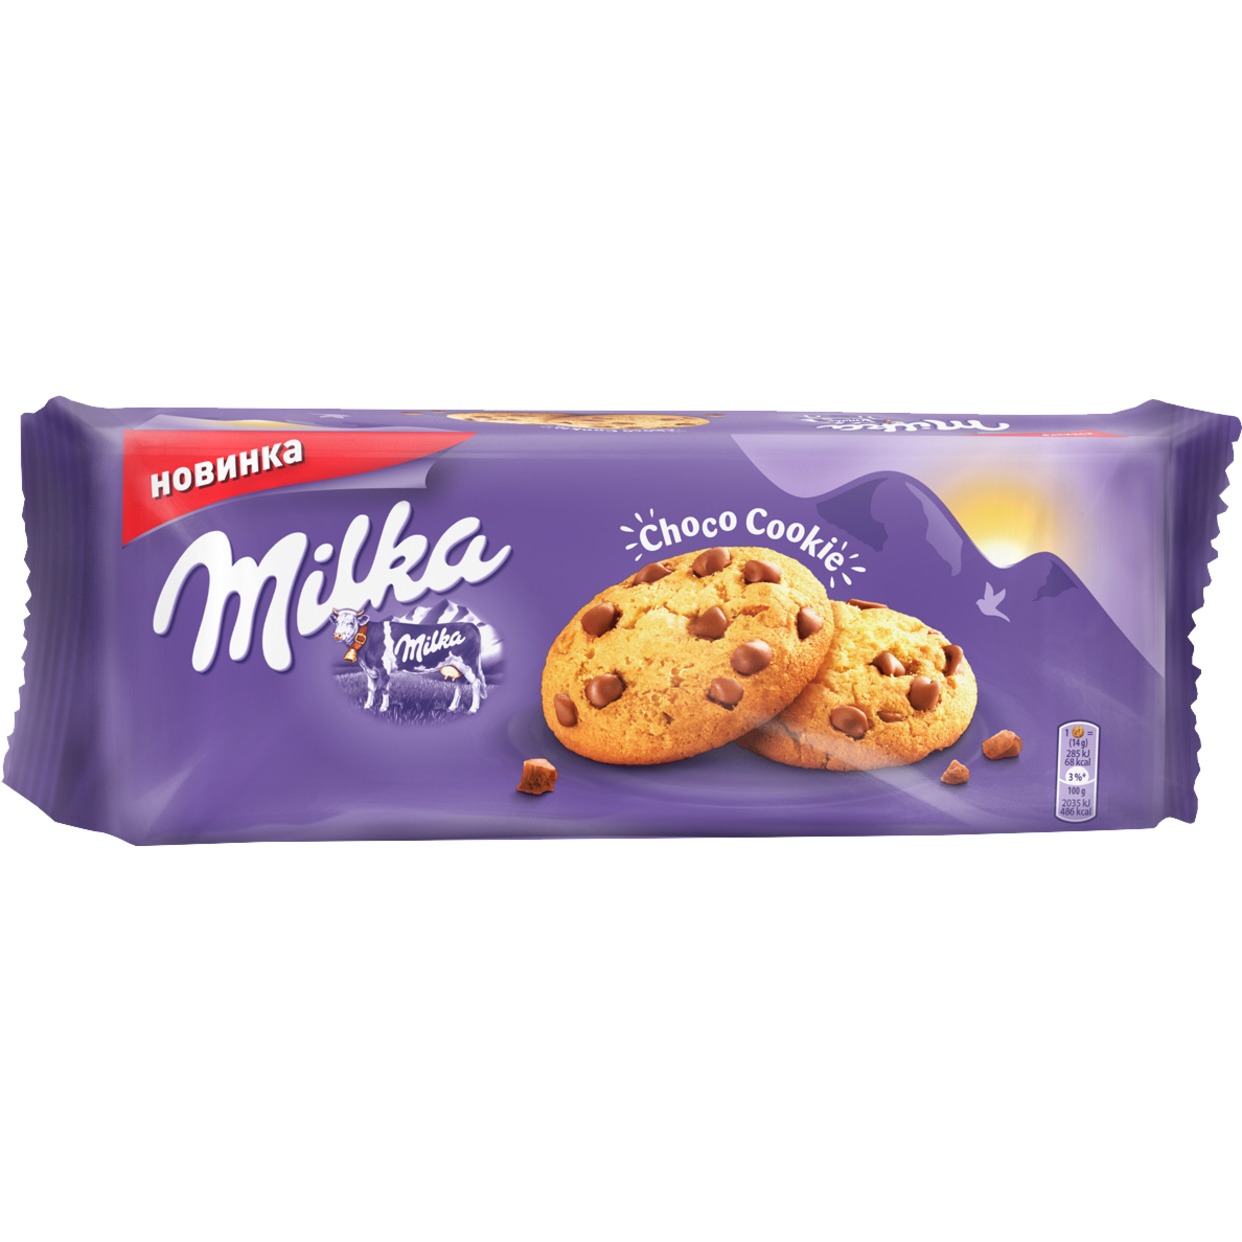 Печенье с кусочками молочного шоколада "Милка", 168 г по акции в Пятерочке